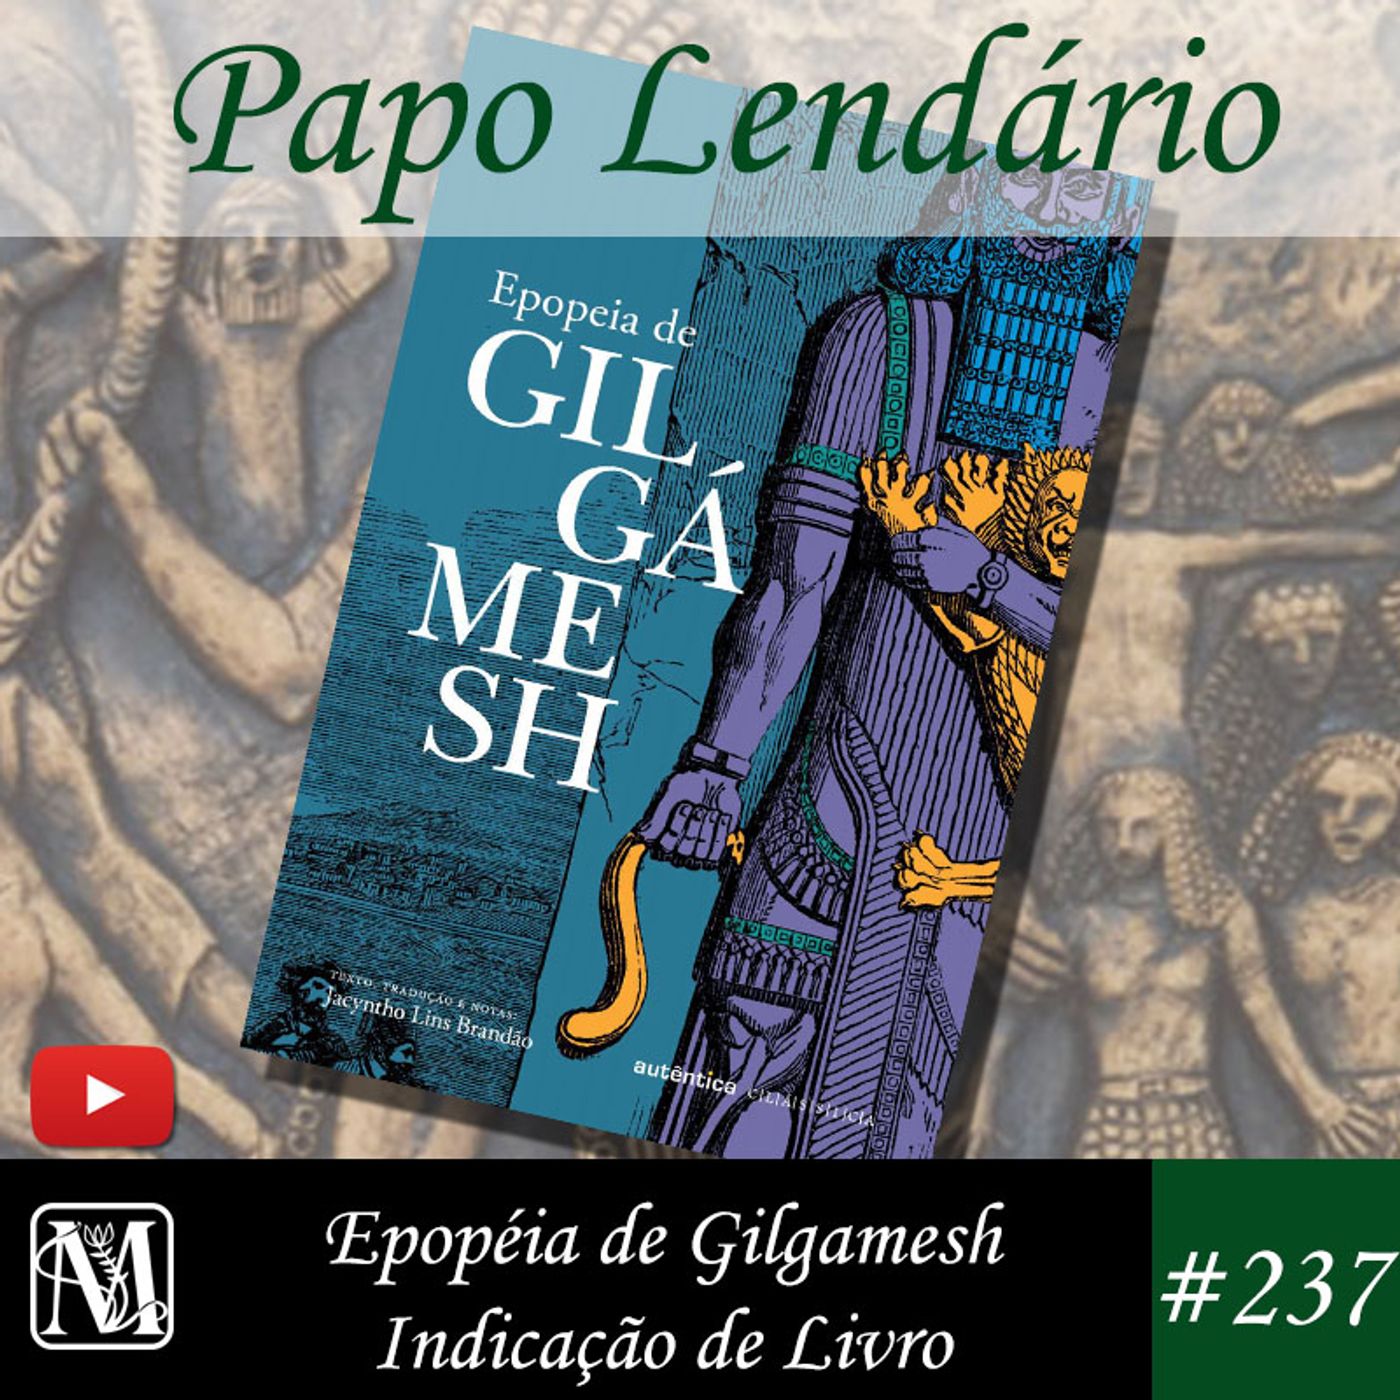 Papo Lendário #237 – Epopéia de Gilgamesh - Indicação de Livro